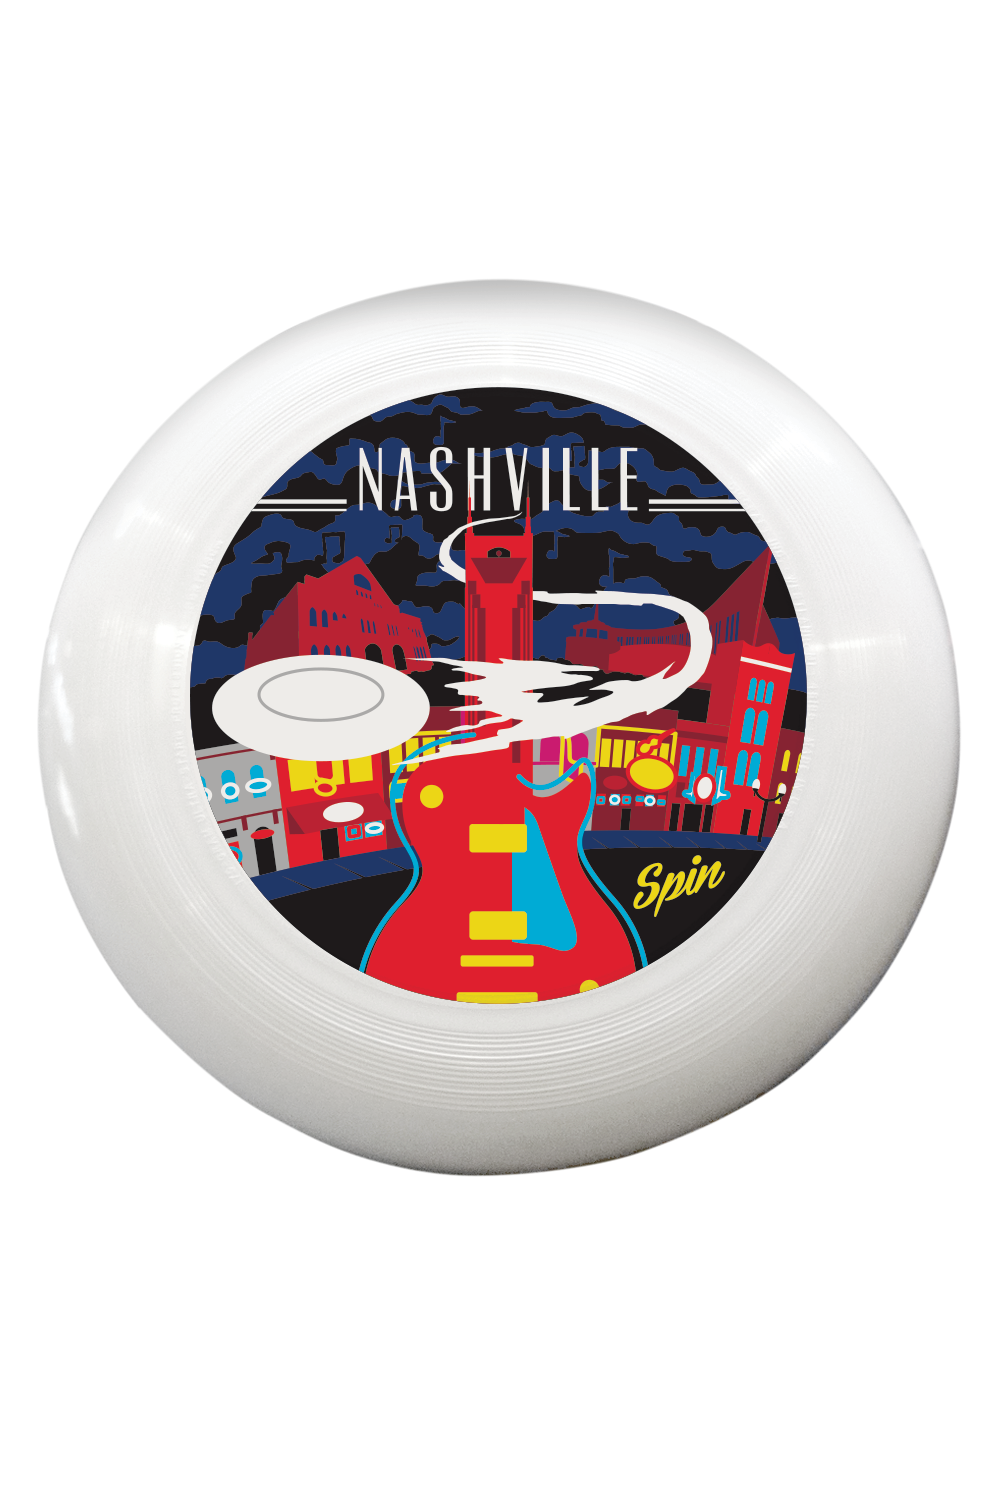 Nashville Disc